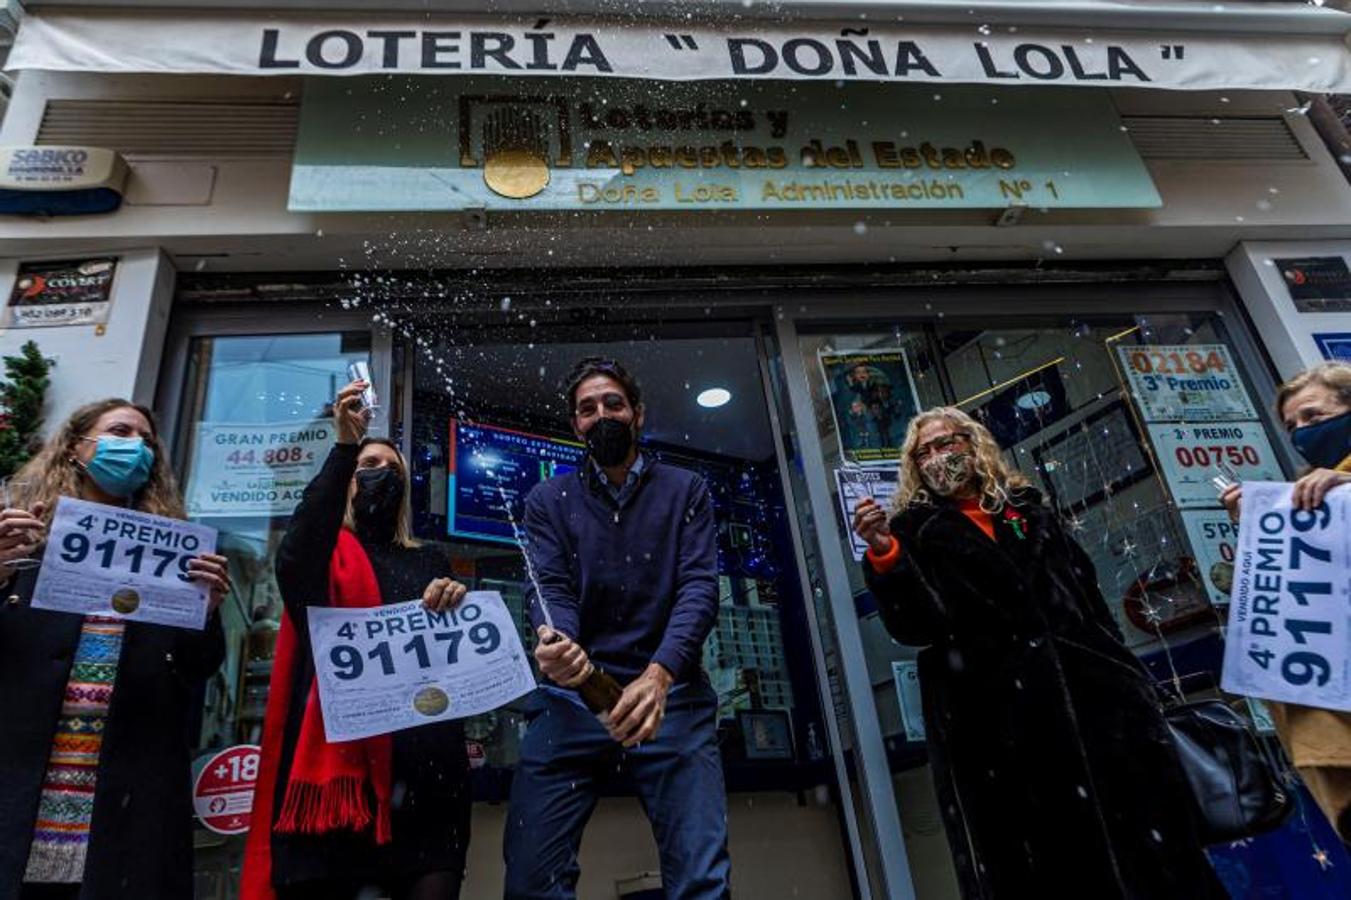 Celebración en la administración de lotería Doña Lola en Toledo.